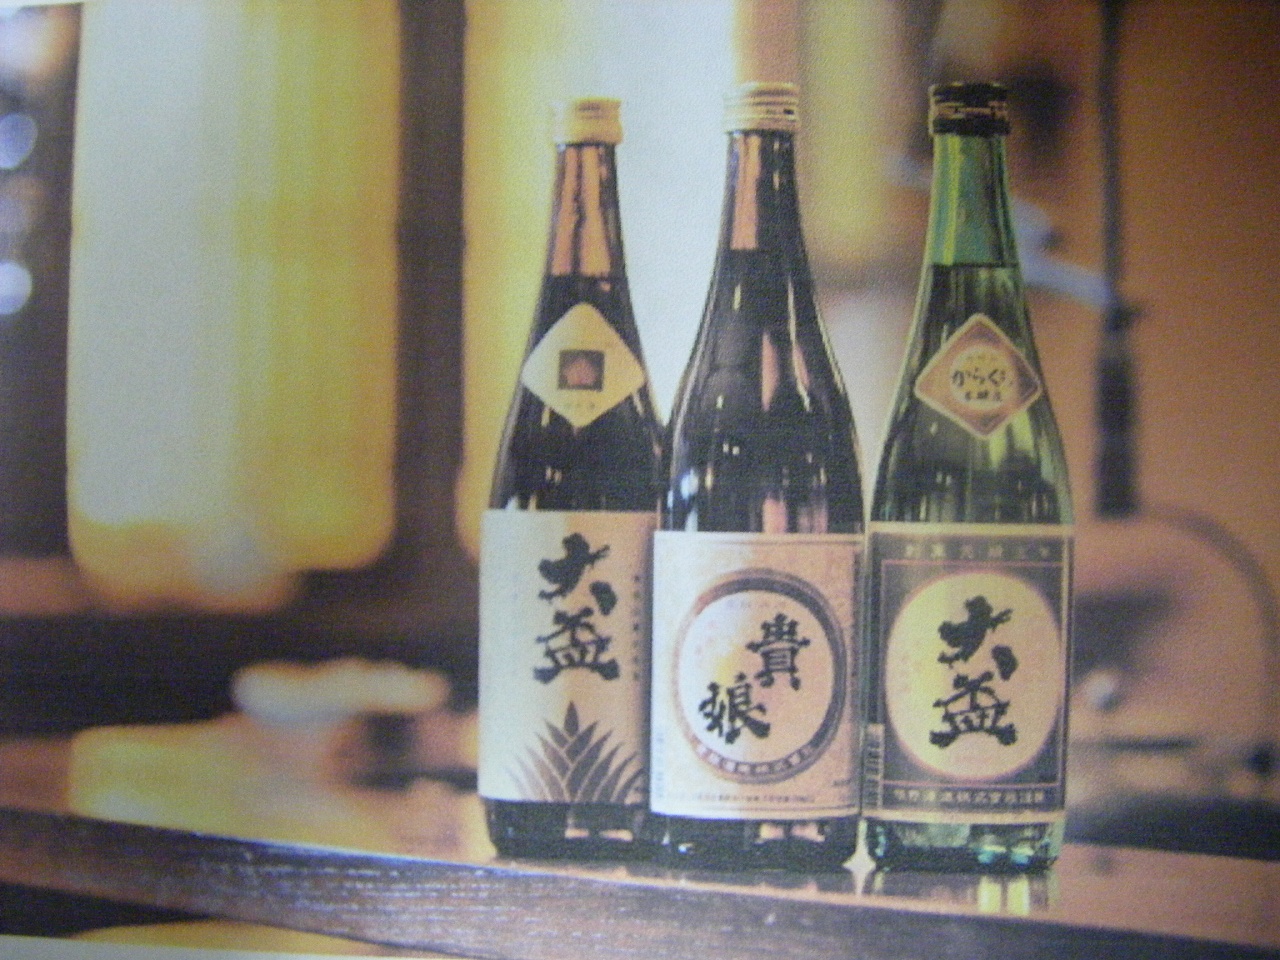 日本酒 四合瓶の提供も始りました | 旅館 佳元スタッフブログ - 楽天ブログ